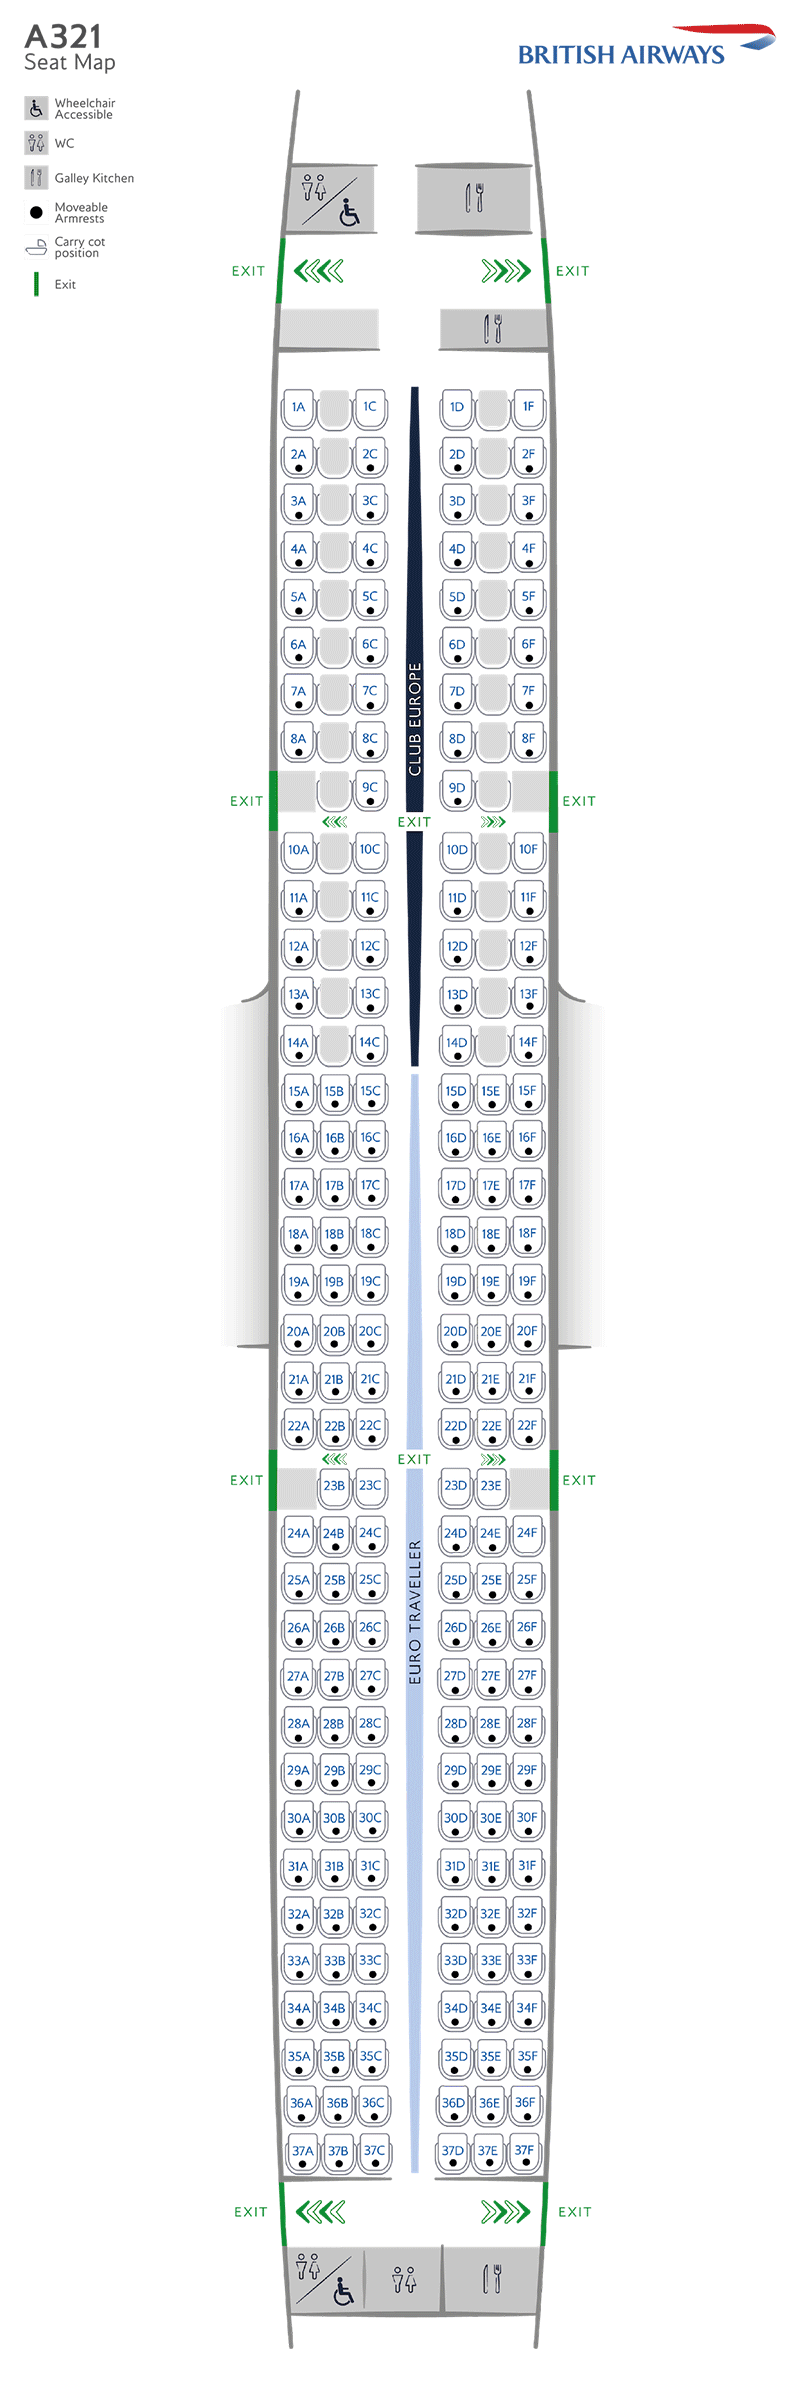 Mapa de asientos del A321-200